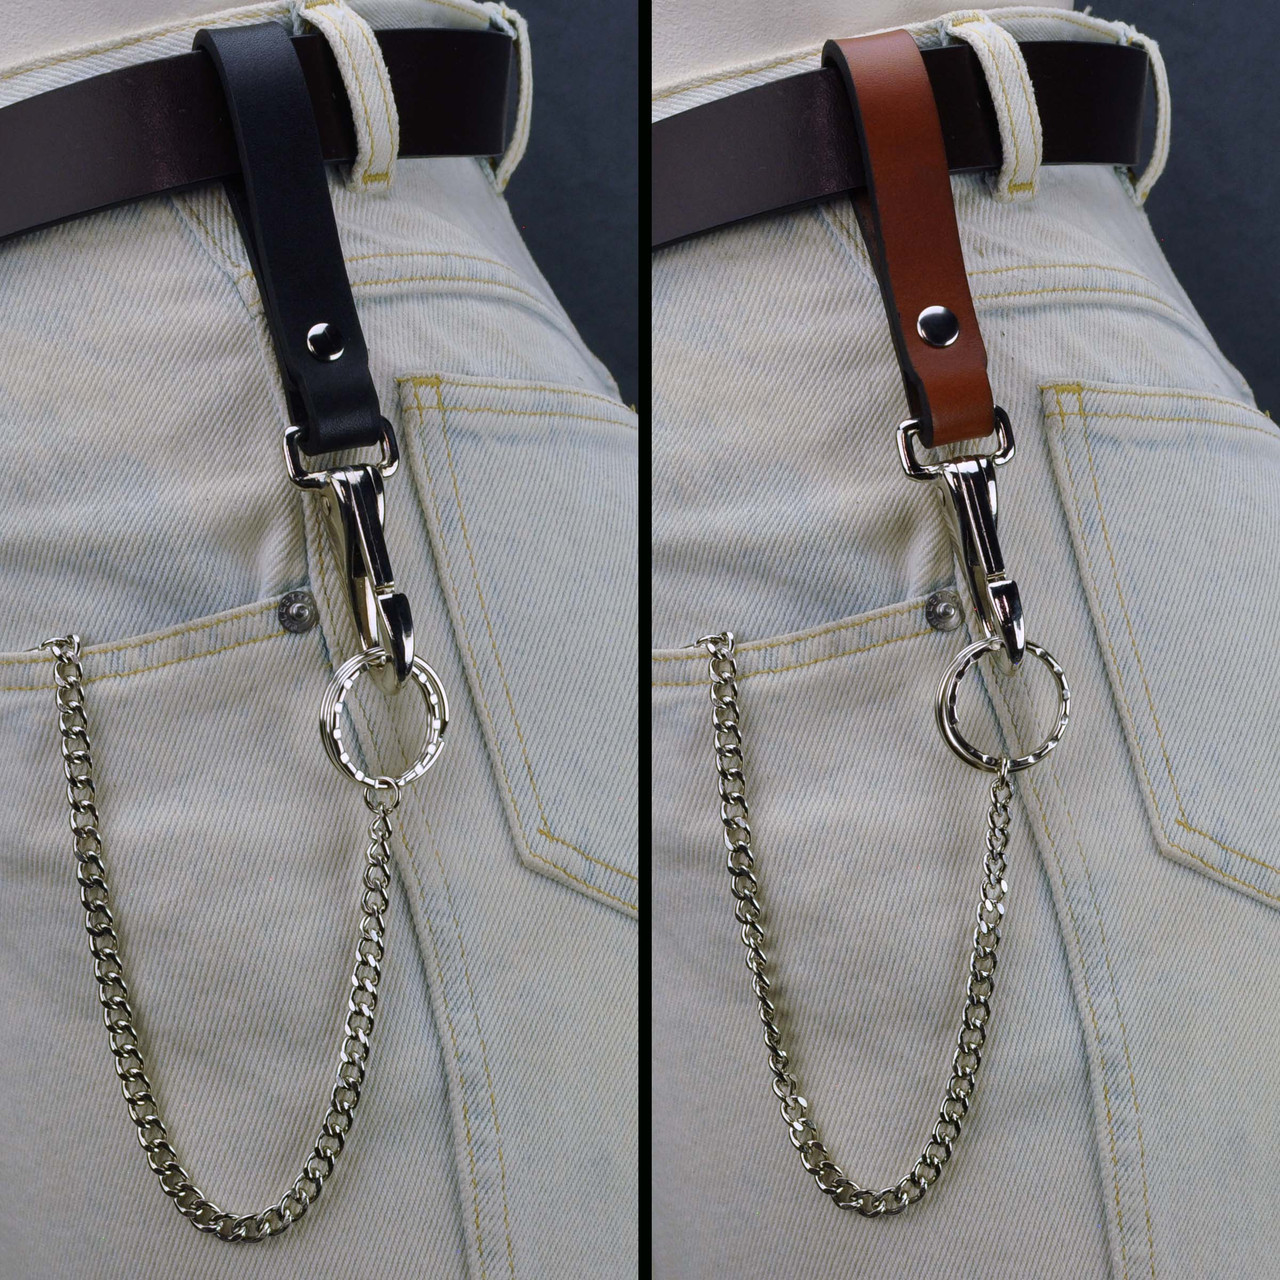 Leather Belt Key Holder Super Duty - Riveted